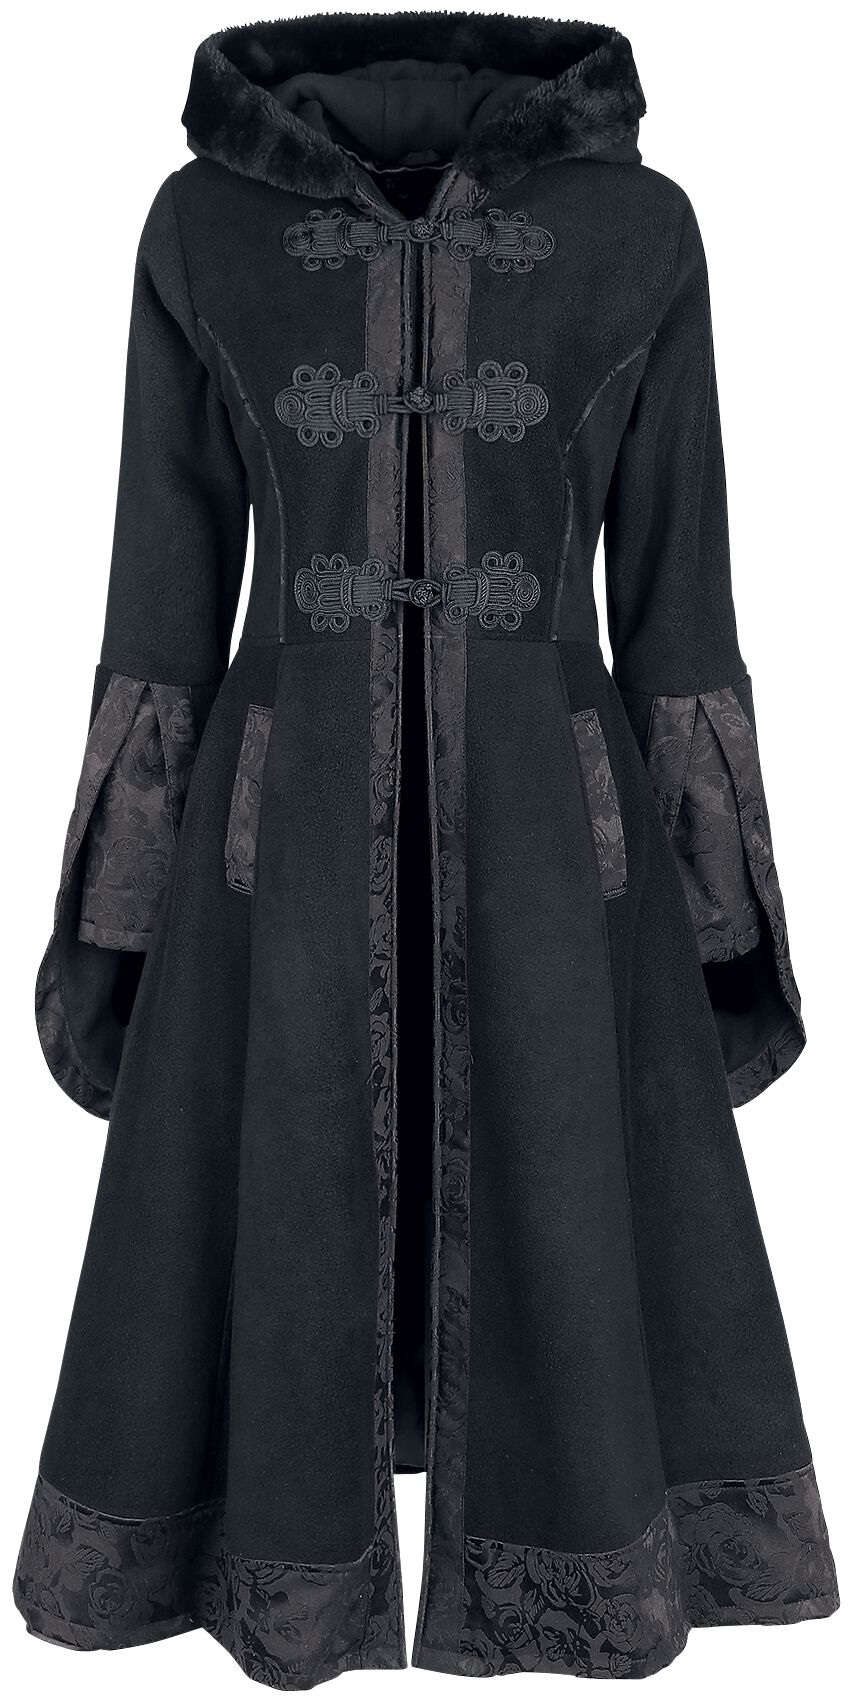 Poizen Industries Luella Coat Mantel schwarz in XL